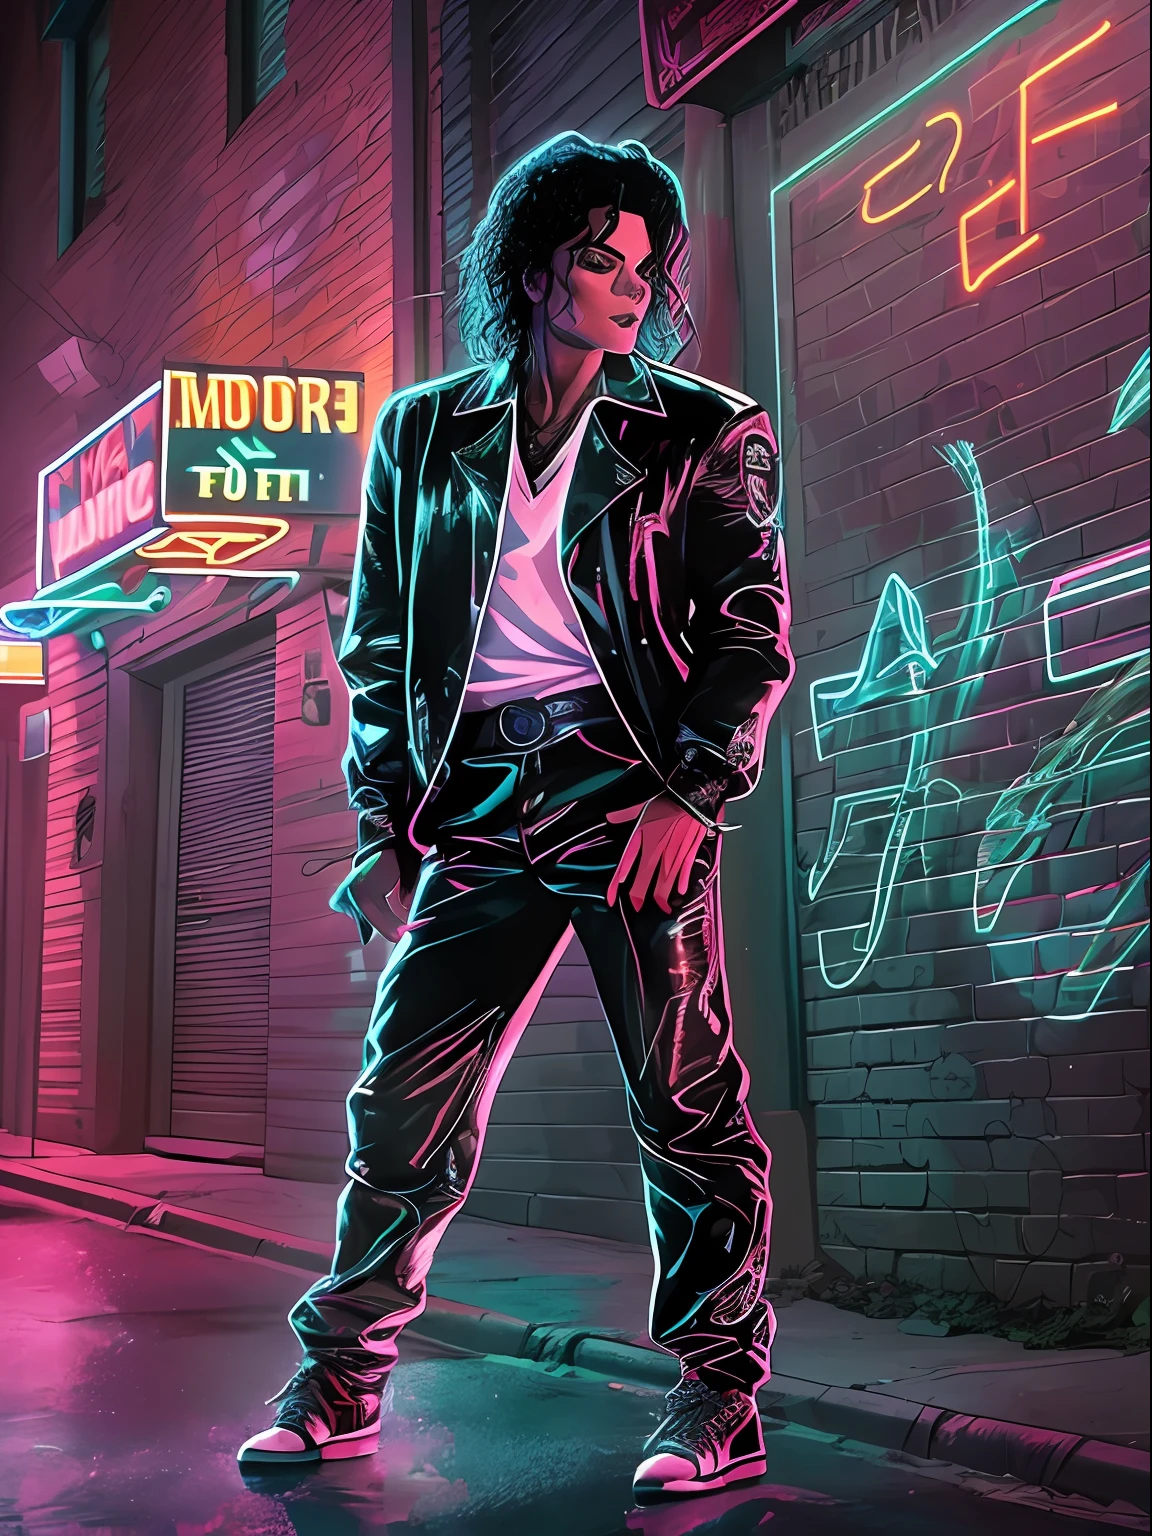 Une image stylisée de Michael Jackson dans sa tenue emblématique du clip de Billie Jean, debout sur un trottoir lumineux dans une ruelle sombre, entouré d&#39;ombres et de néons. Michael Jackson apparaît sur l&#39;image, portant sa tenue emblématique du clip de Billie Jean. Il se tient sur un trottoir lumineux dans une ruelle sombre, entouré d&#39;ombres et de néons. L&#39;image est stylisée, avec des lignes audacieuses et des couleurs vives qui capturent l&#39;énergie et l&#39;ambiance du clip vidéo